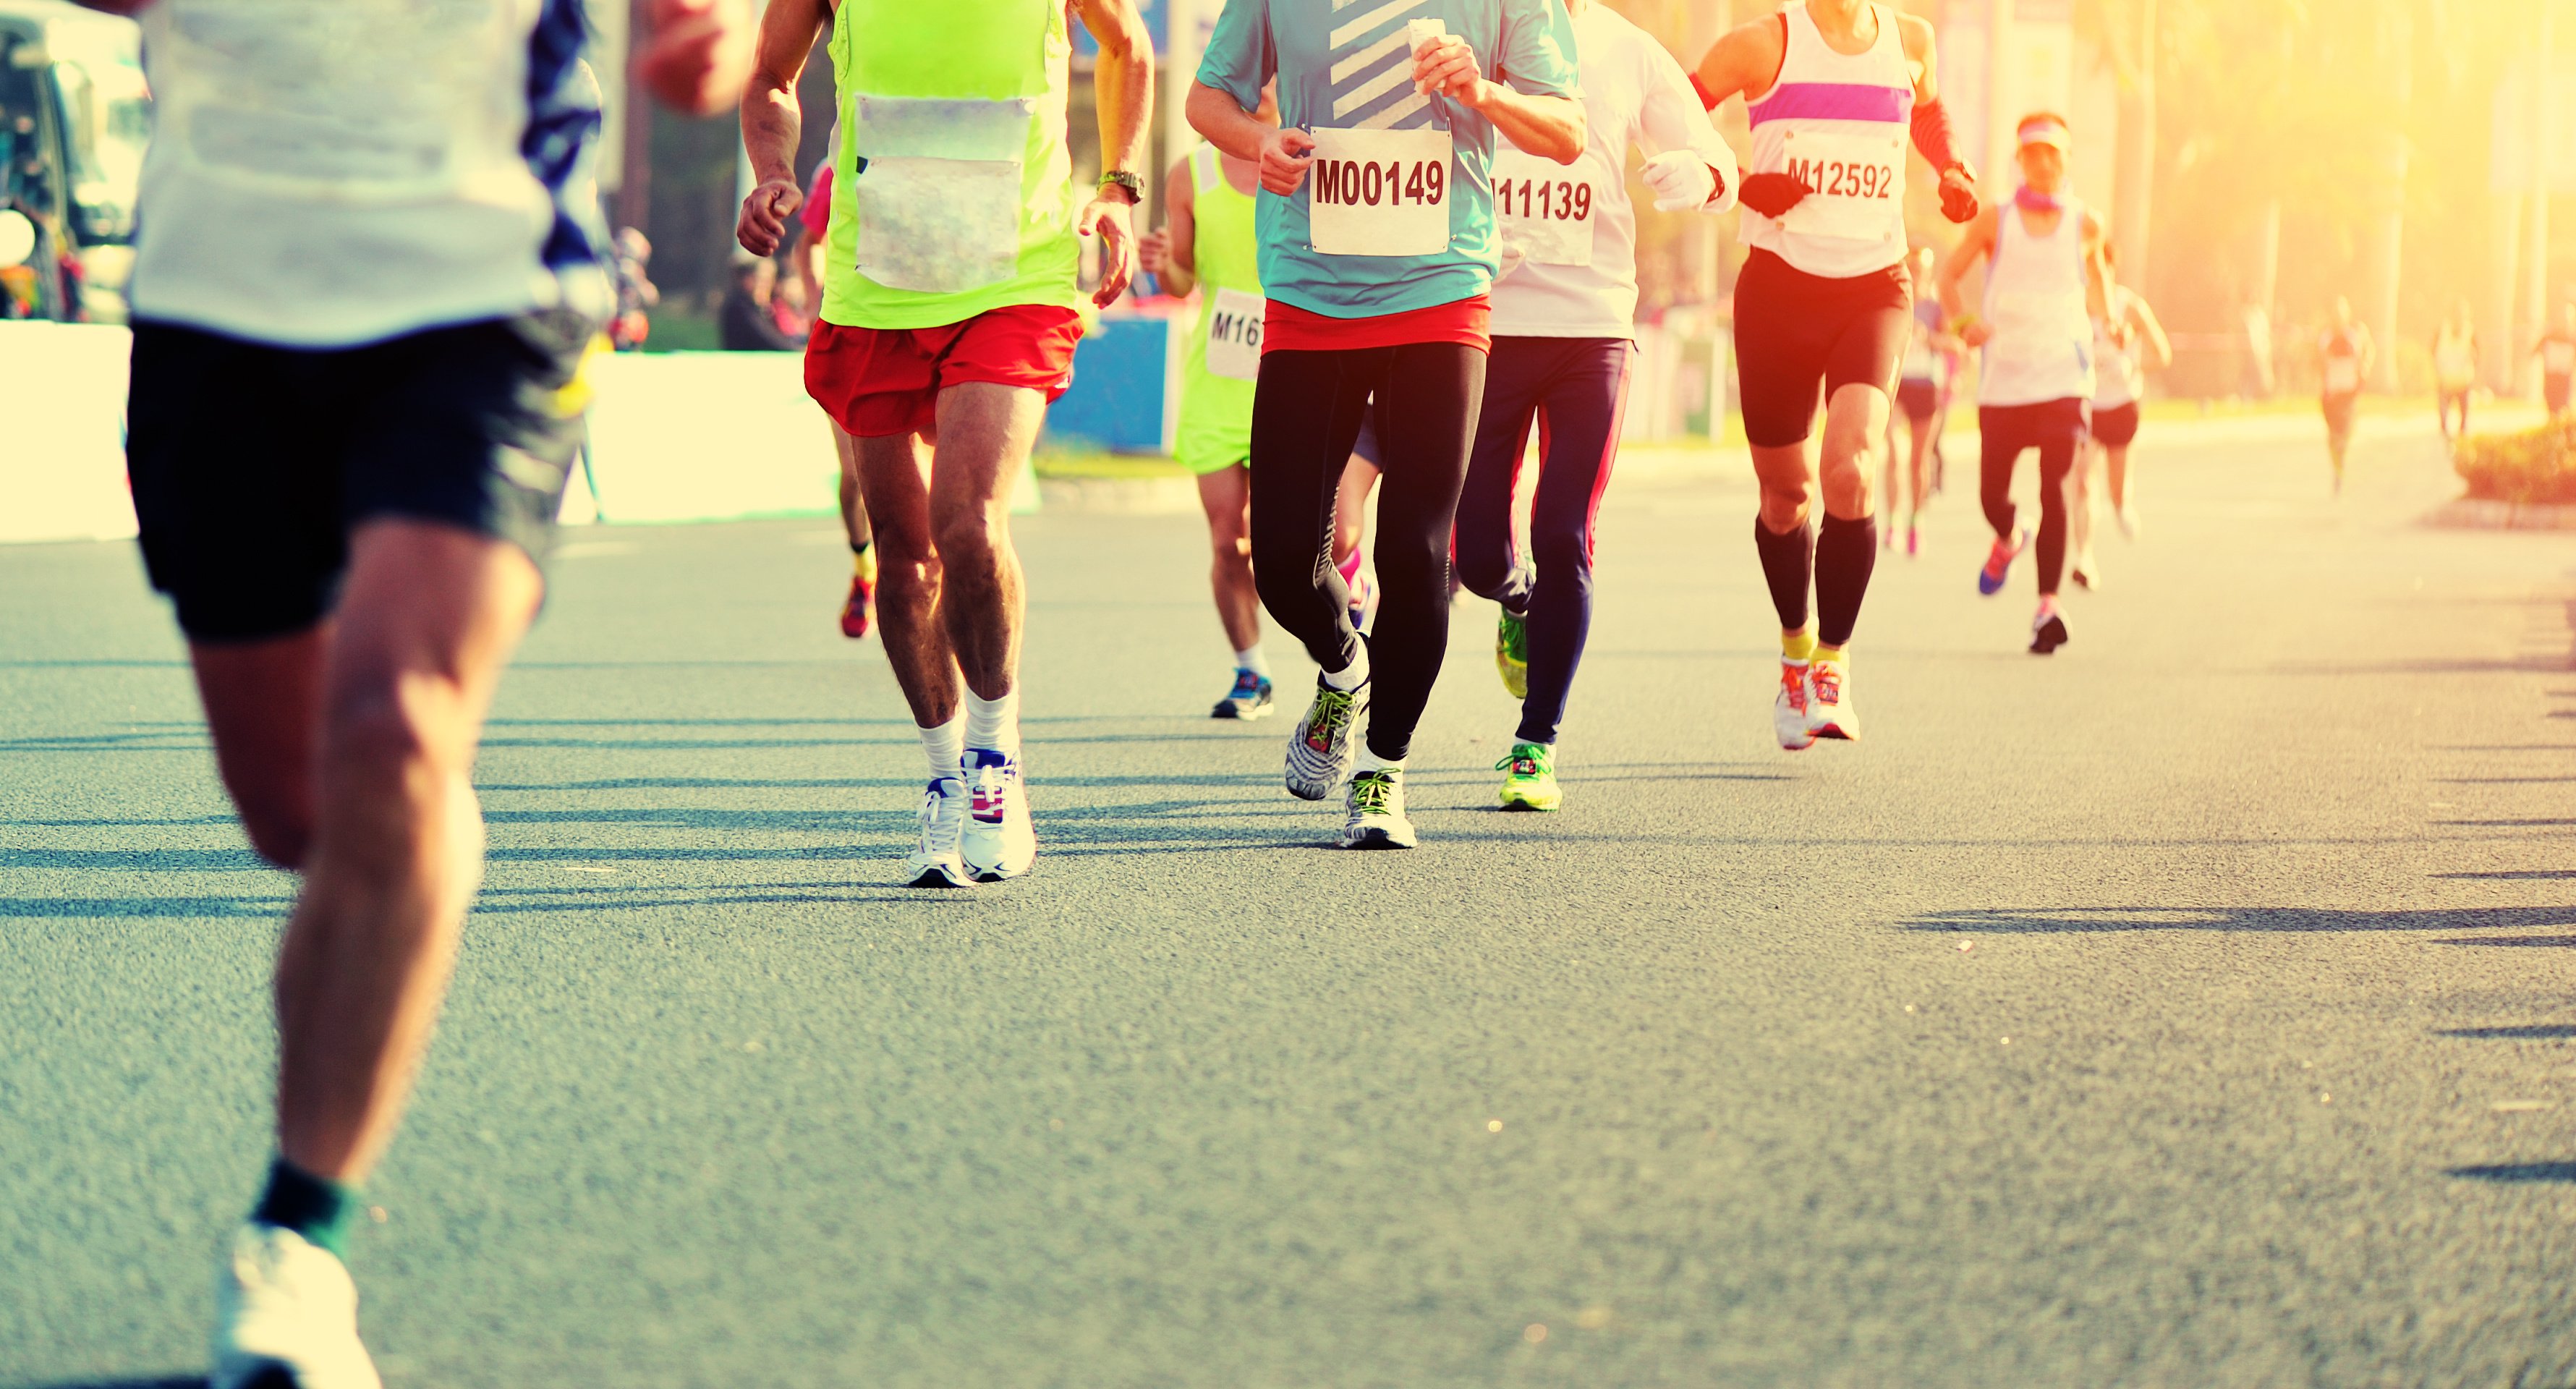 28 Summer Marathons Where Are You Running This Season?